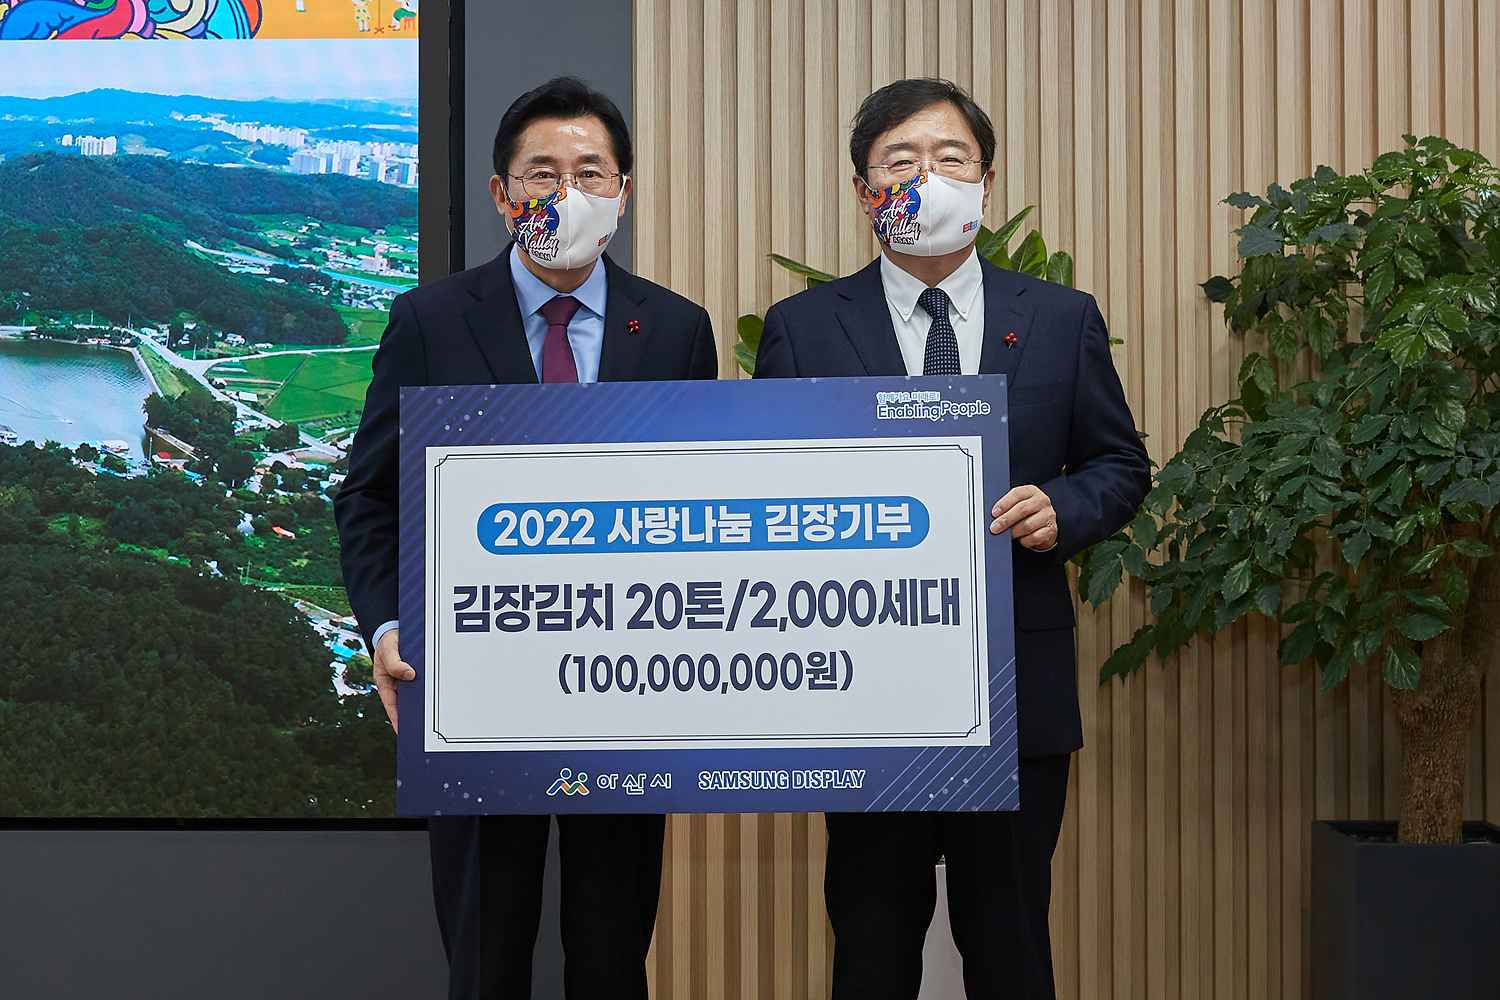 2022.11.29.삼성디스플레이, 사랑나눔 김장기부 1억원상당 20톤 전달